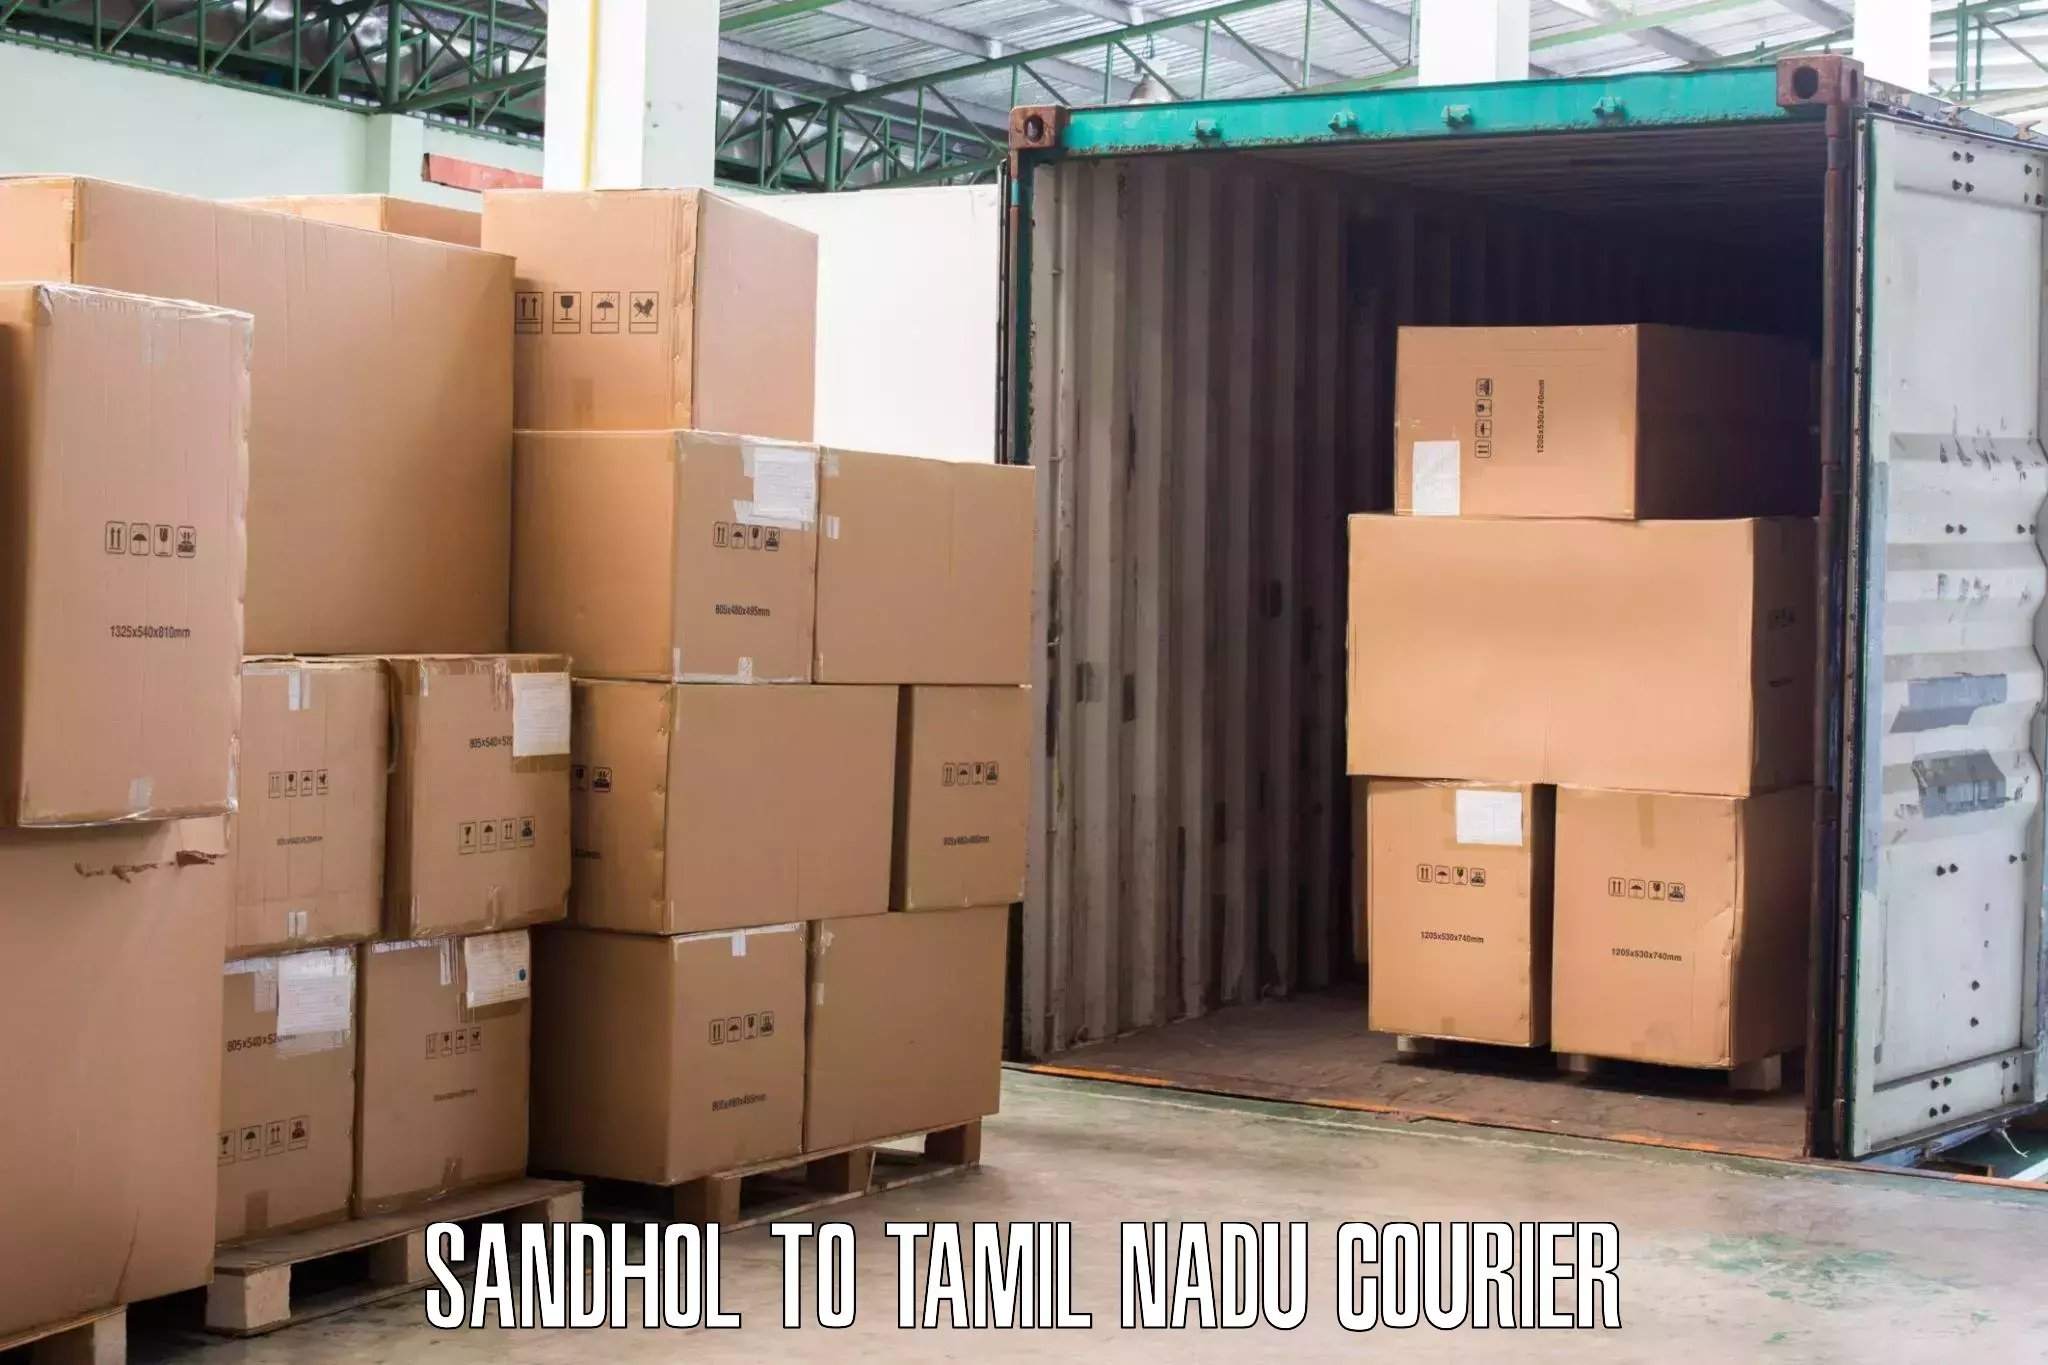 Local moving services Sandhol to Thiruvadanai